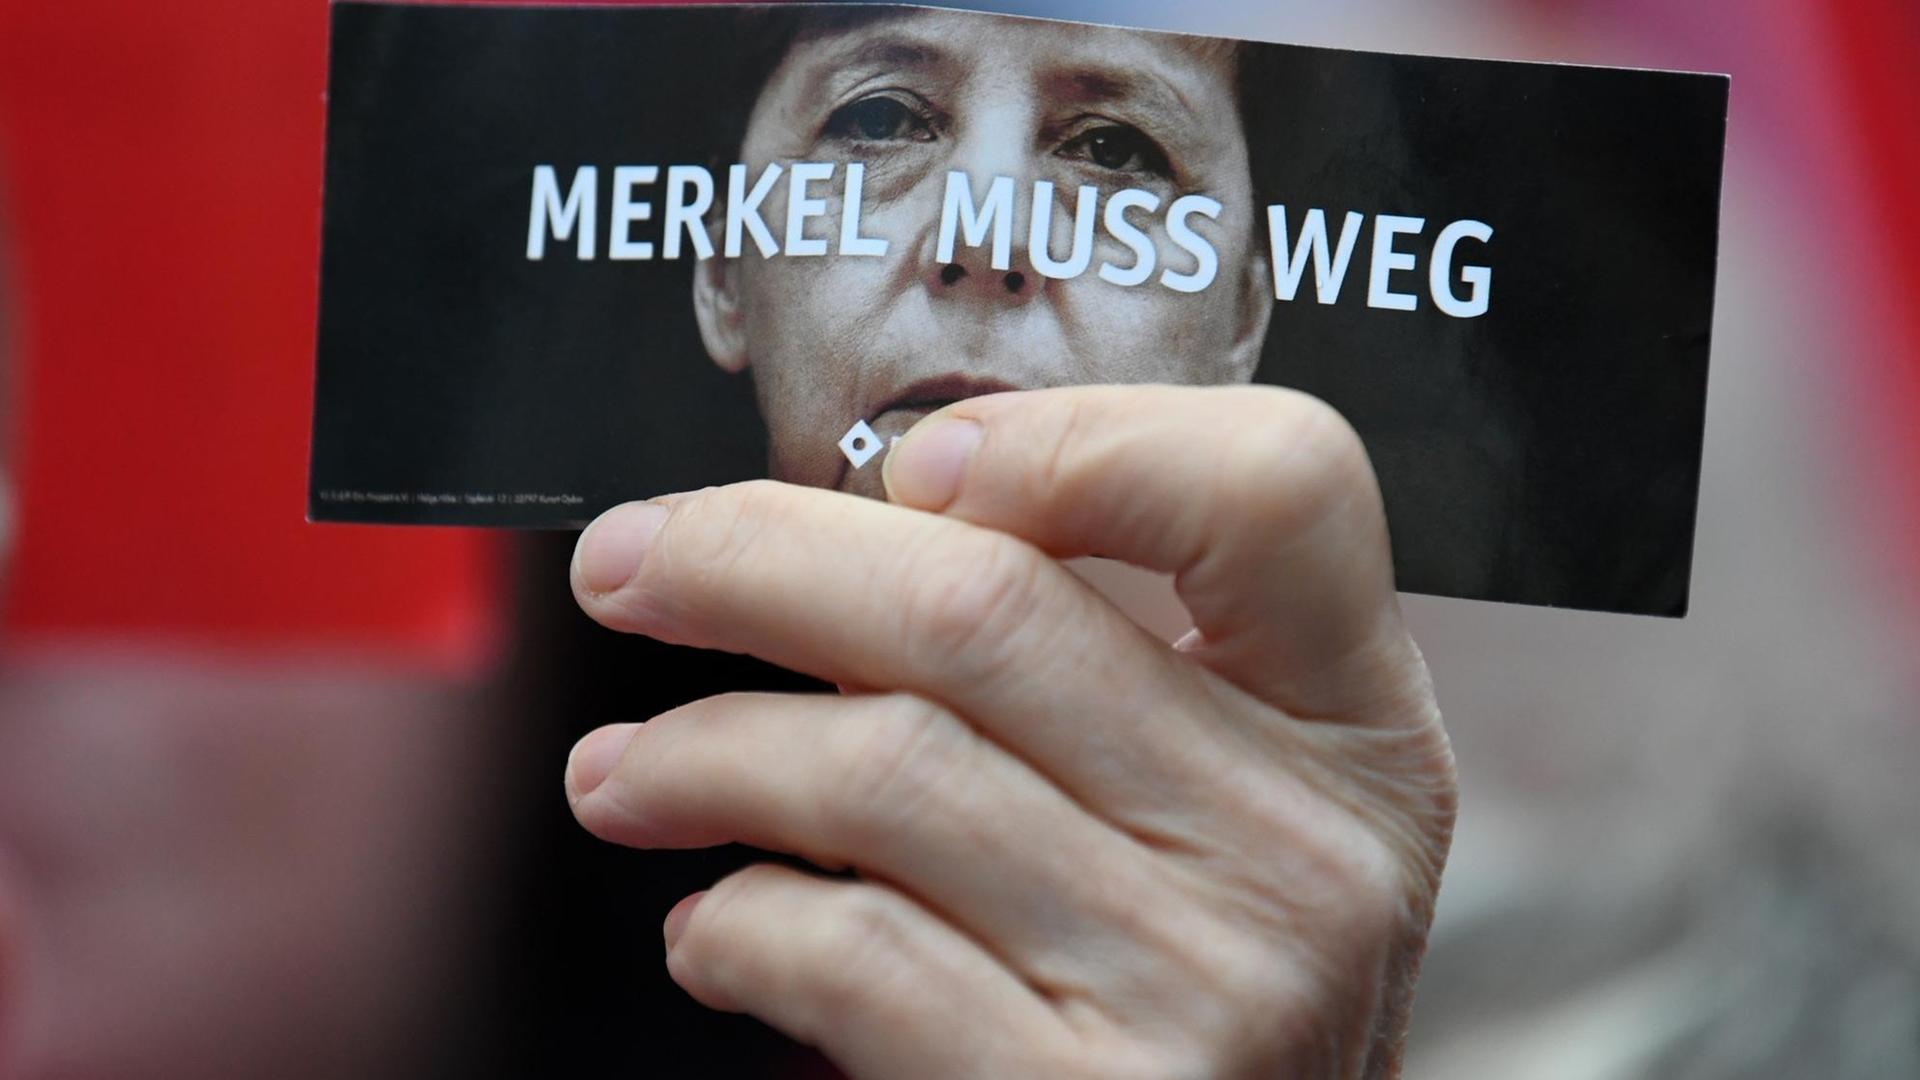 Demonstranten protestieren in Finsterwalde während einer Wahlkampfveranstaltung der CDU auf dem Marktplatz gegen Bundeskanzlerin Angela Merkel. Ein Demonstrant hält eine Karte mit der Aufschrift "Merkel muss weg".